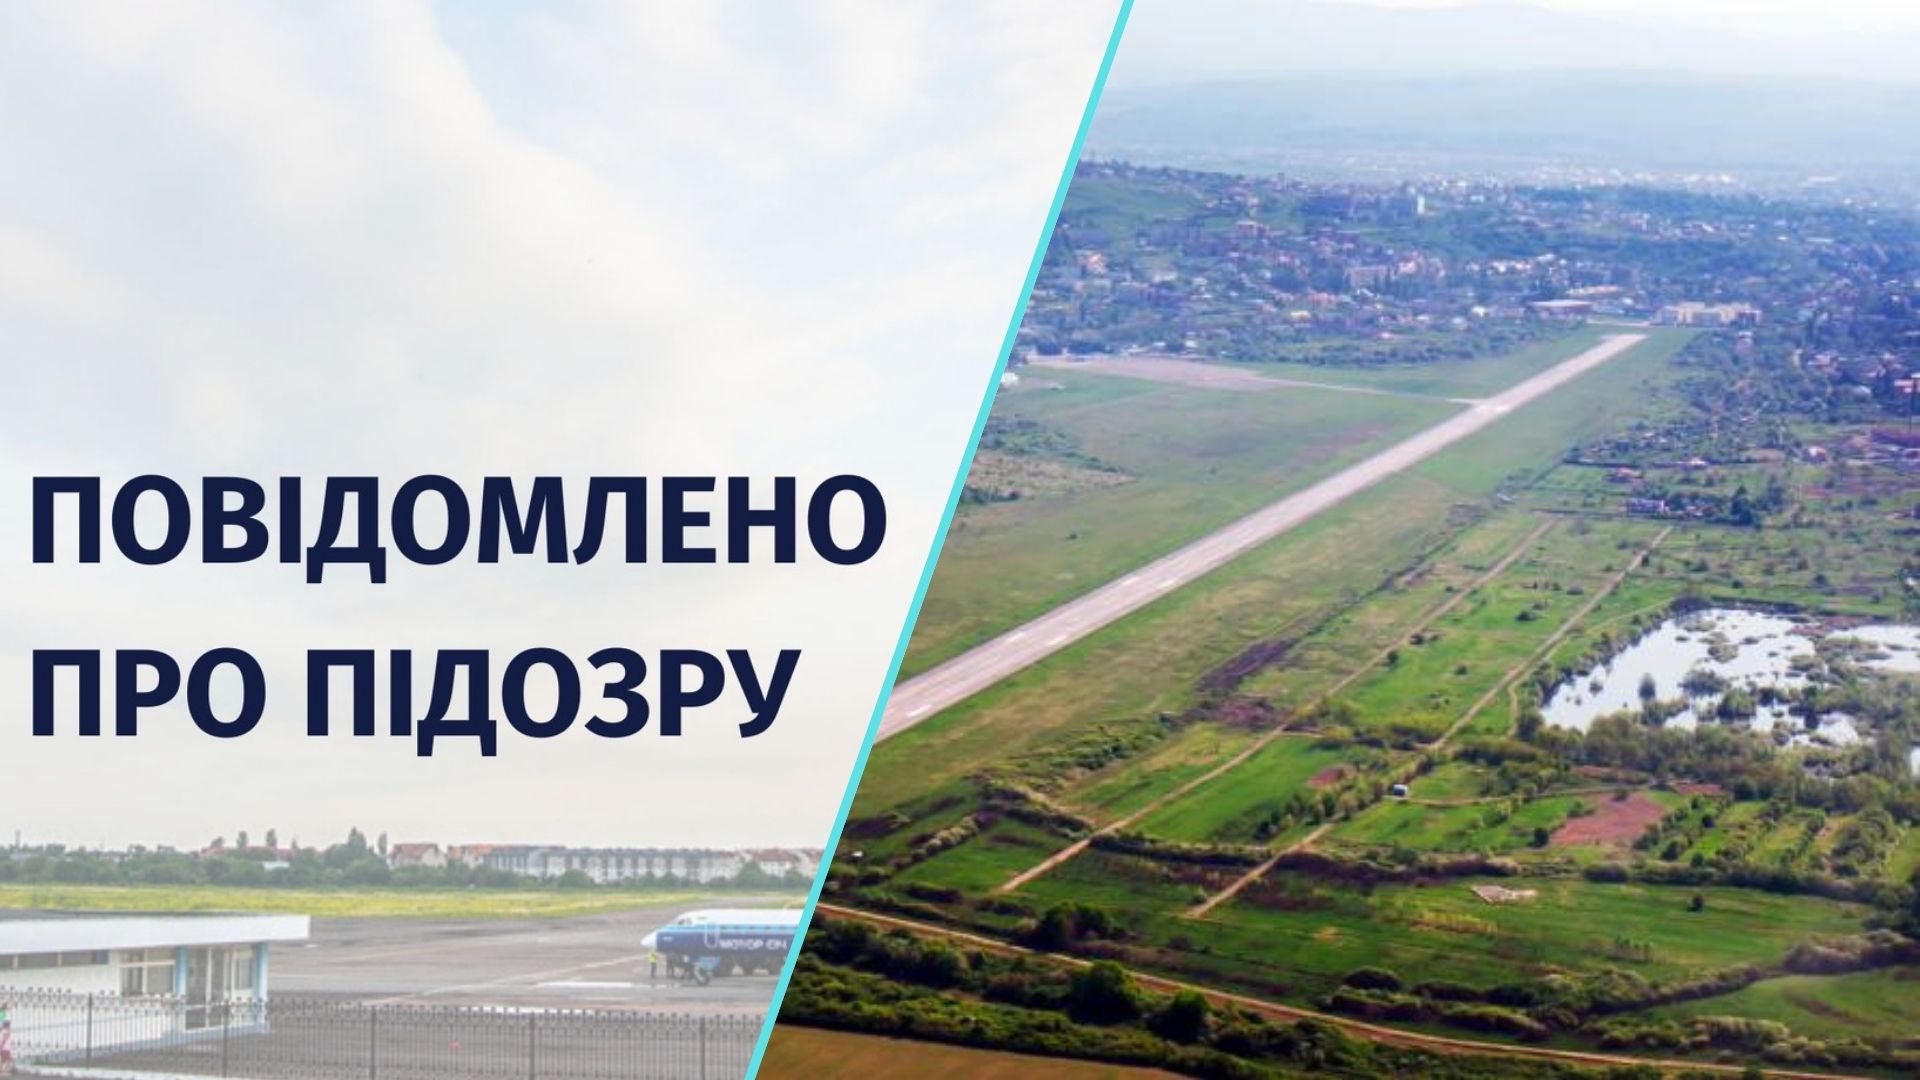 Експрацівницю Ужгородської міськради підозрюють у службовій недбалості, через яку у приватну власність надано землі аеропорту вартістю понад 11 млн грн.